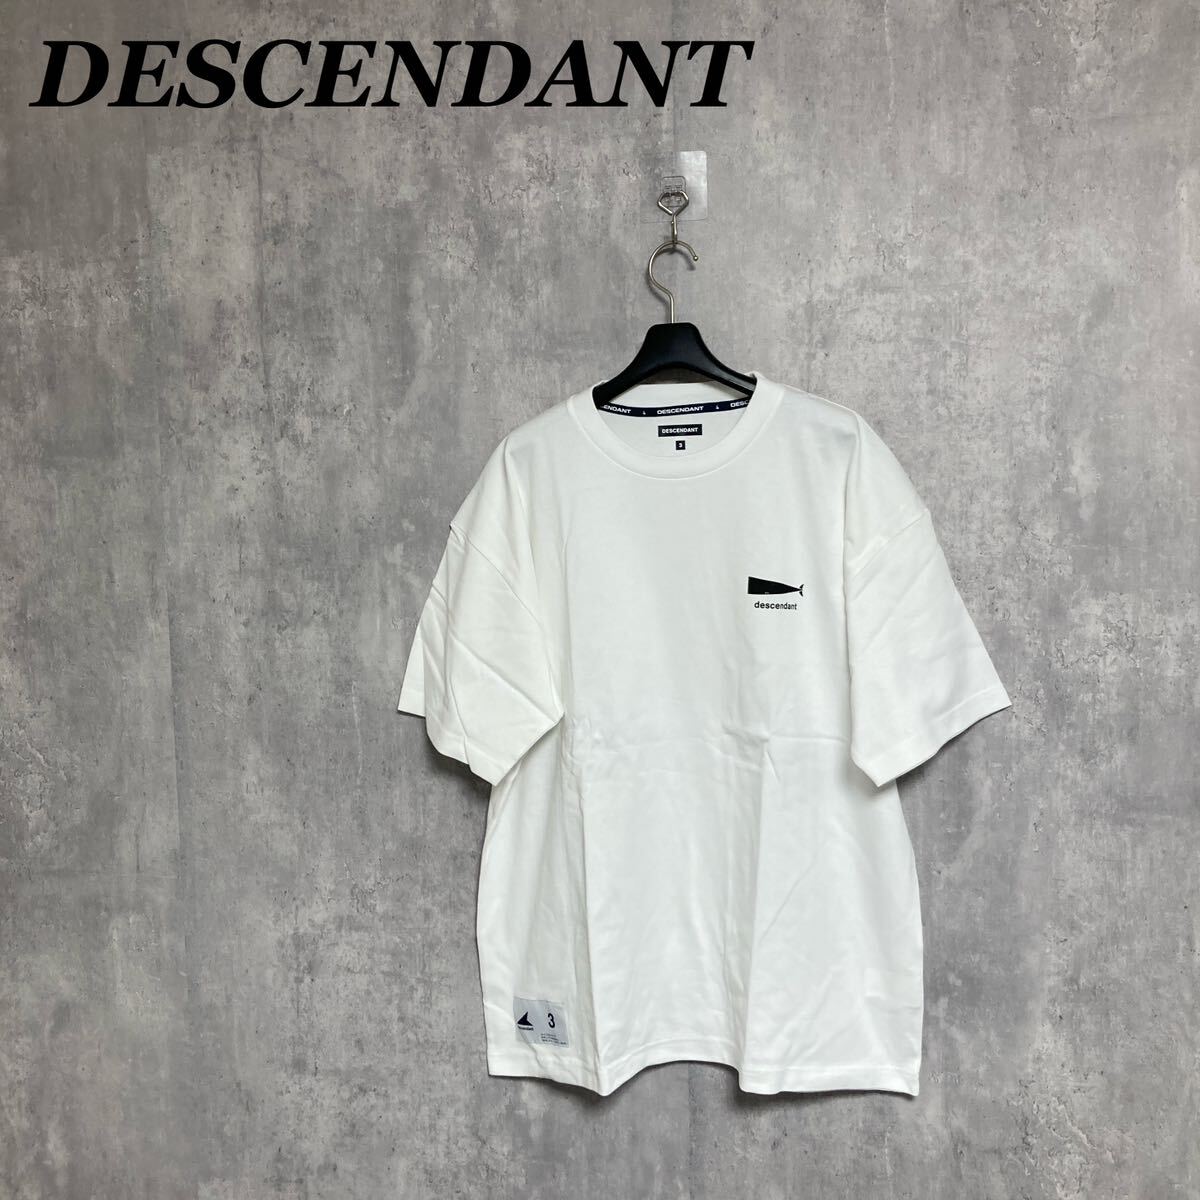 DESCENDANT クジラプリント Tシャツ 3 半袖 白 ホワイト ディセンダント_画像1